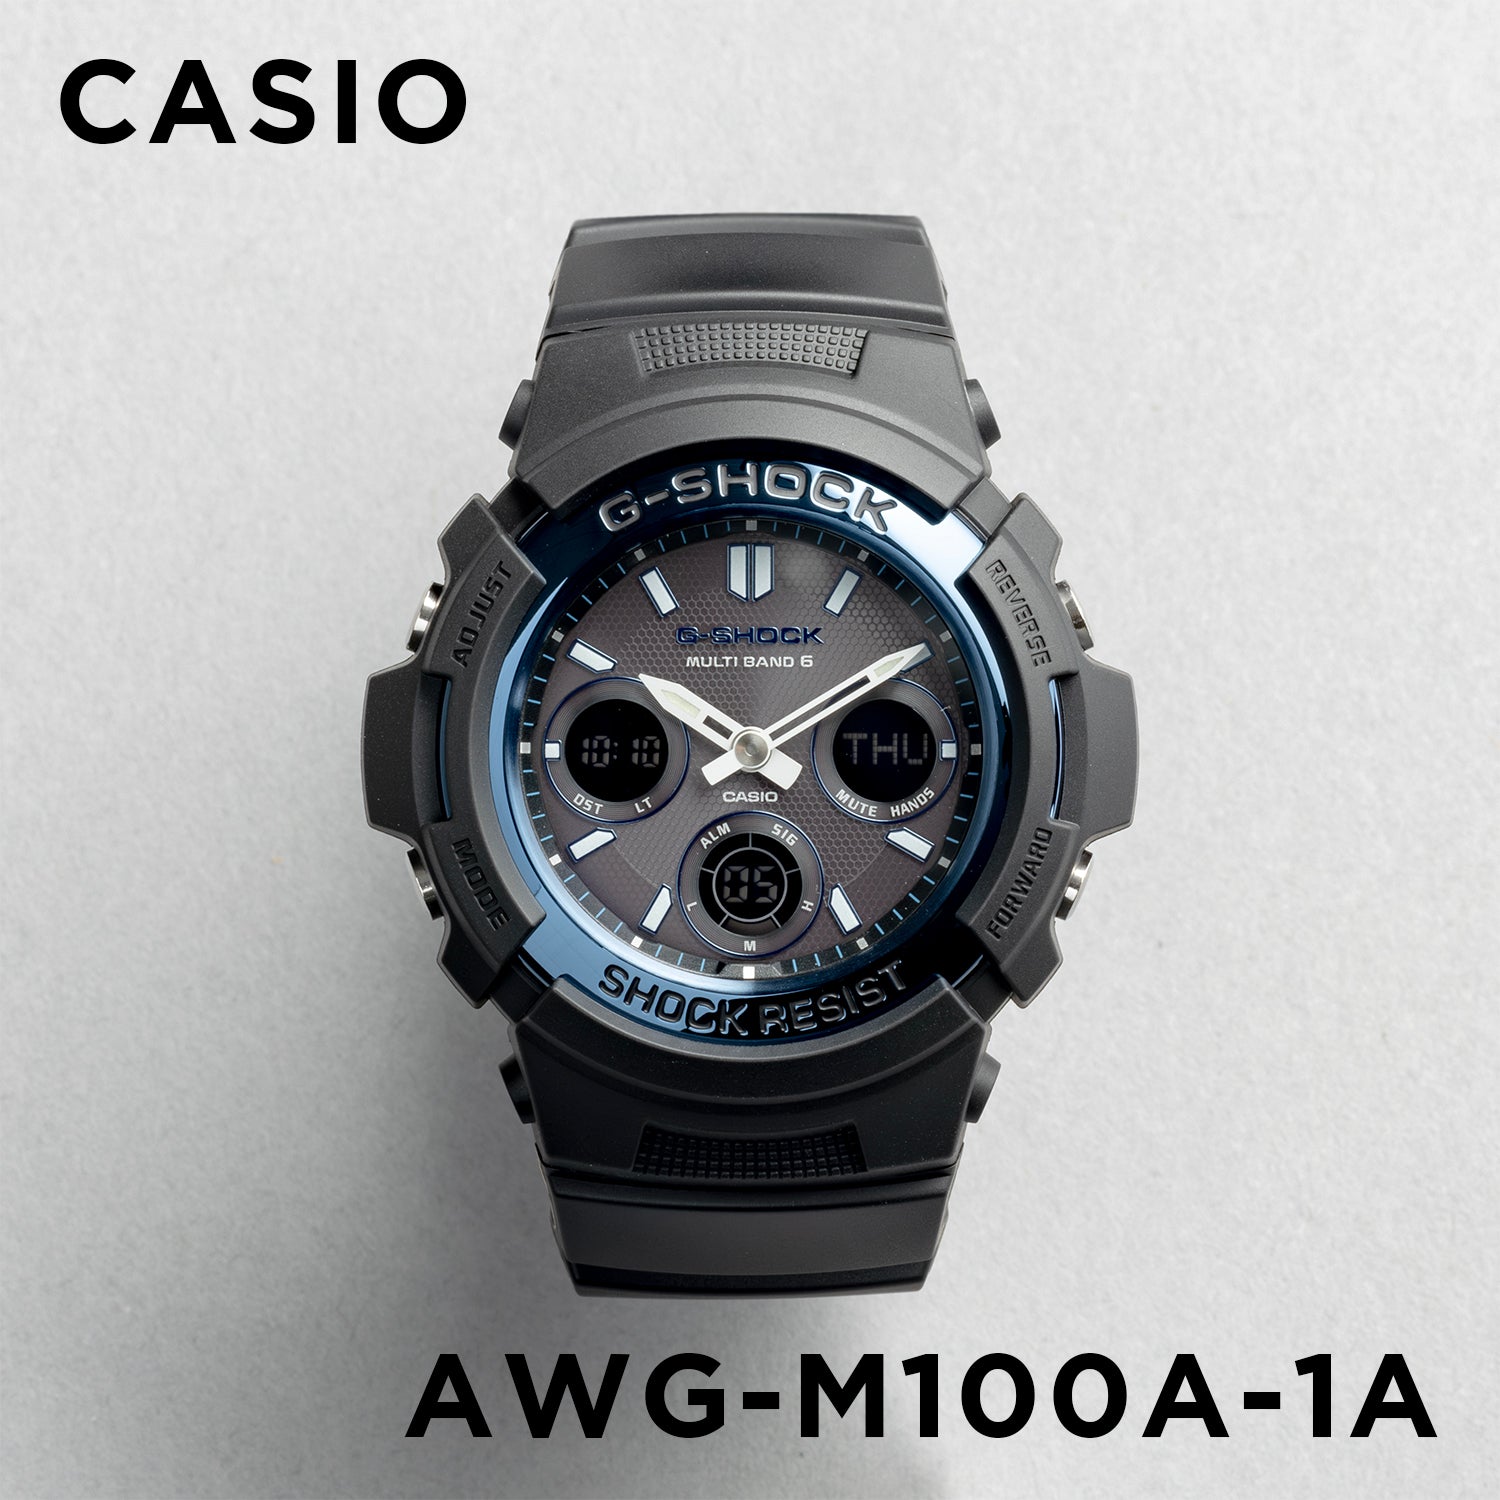 Casio G-shock AWG-M100A-1A